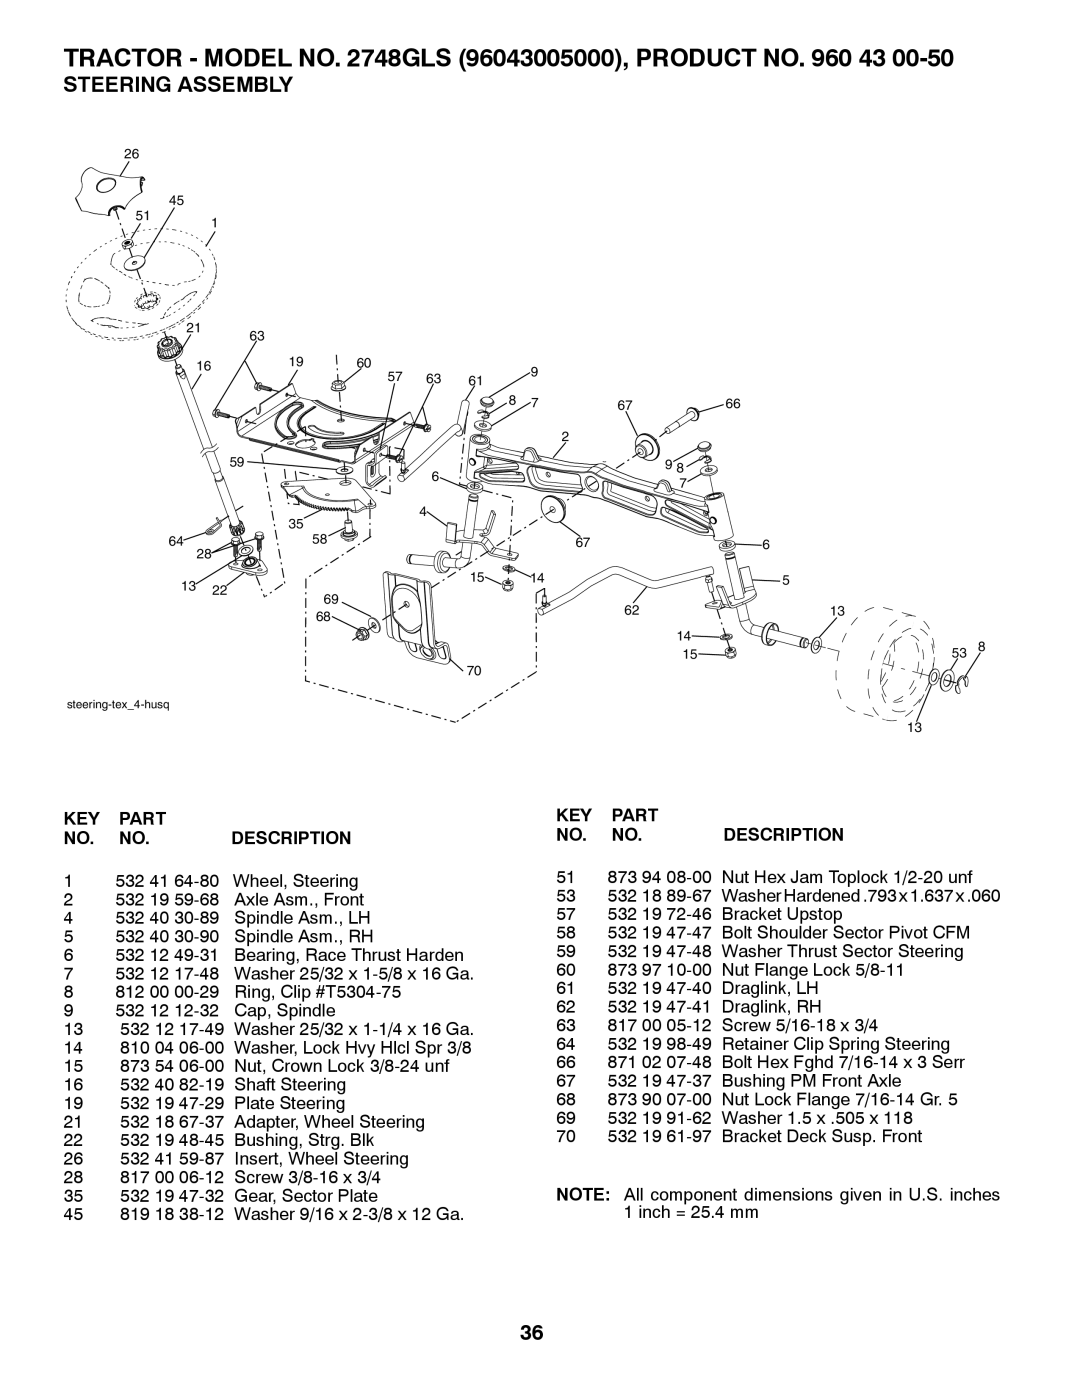 Husqvarna 2748 GLS (CA) manual Steering Assembly, Part, Description 